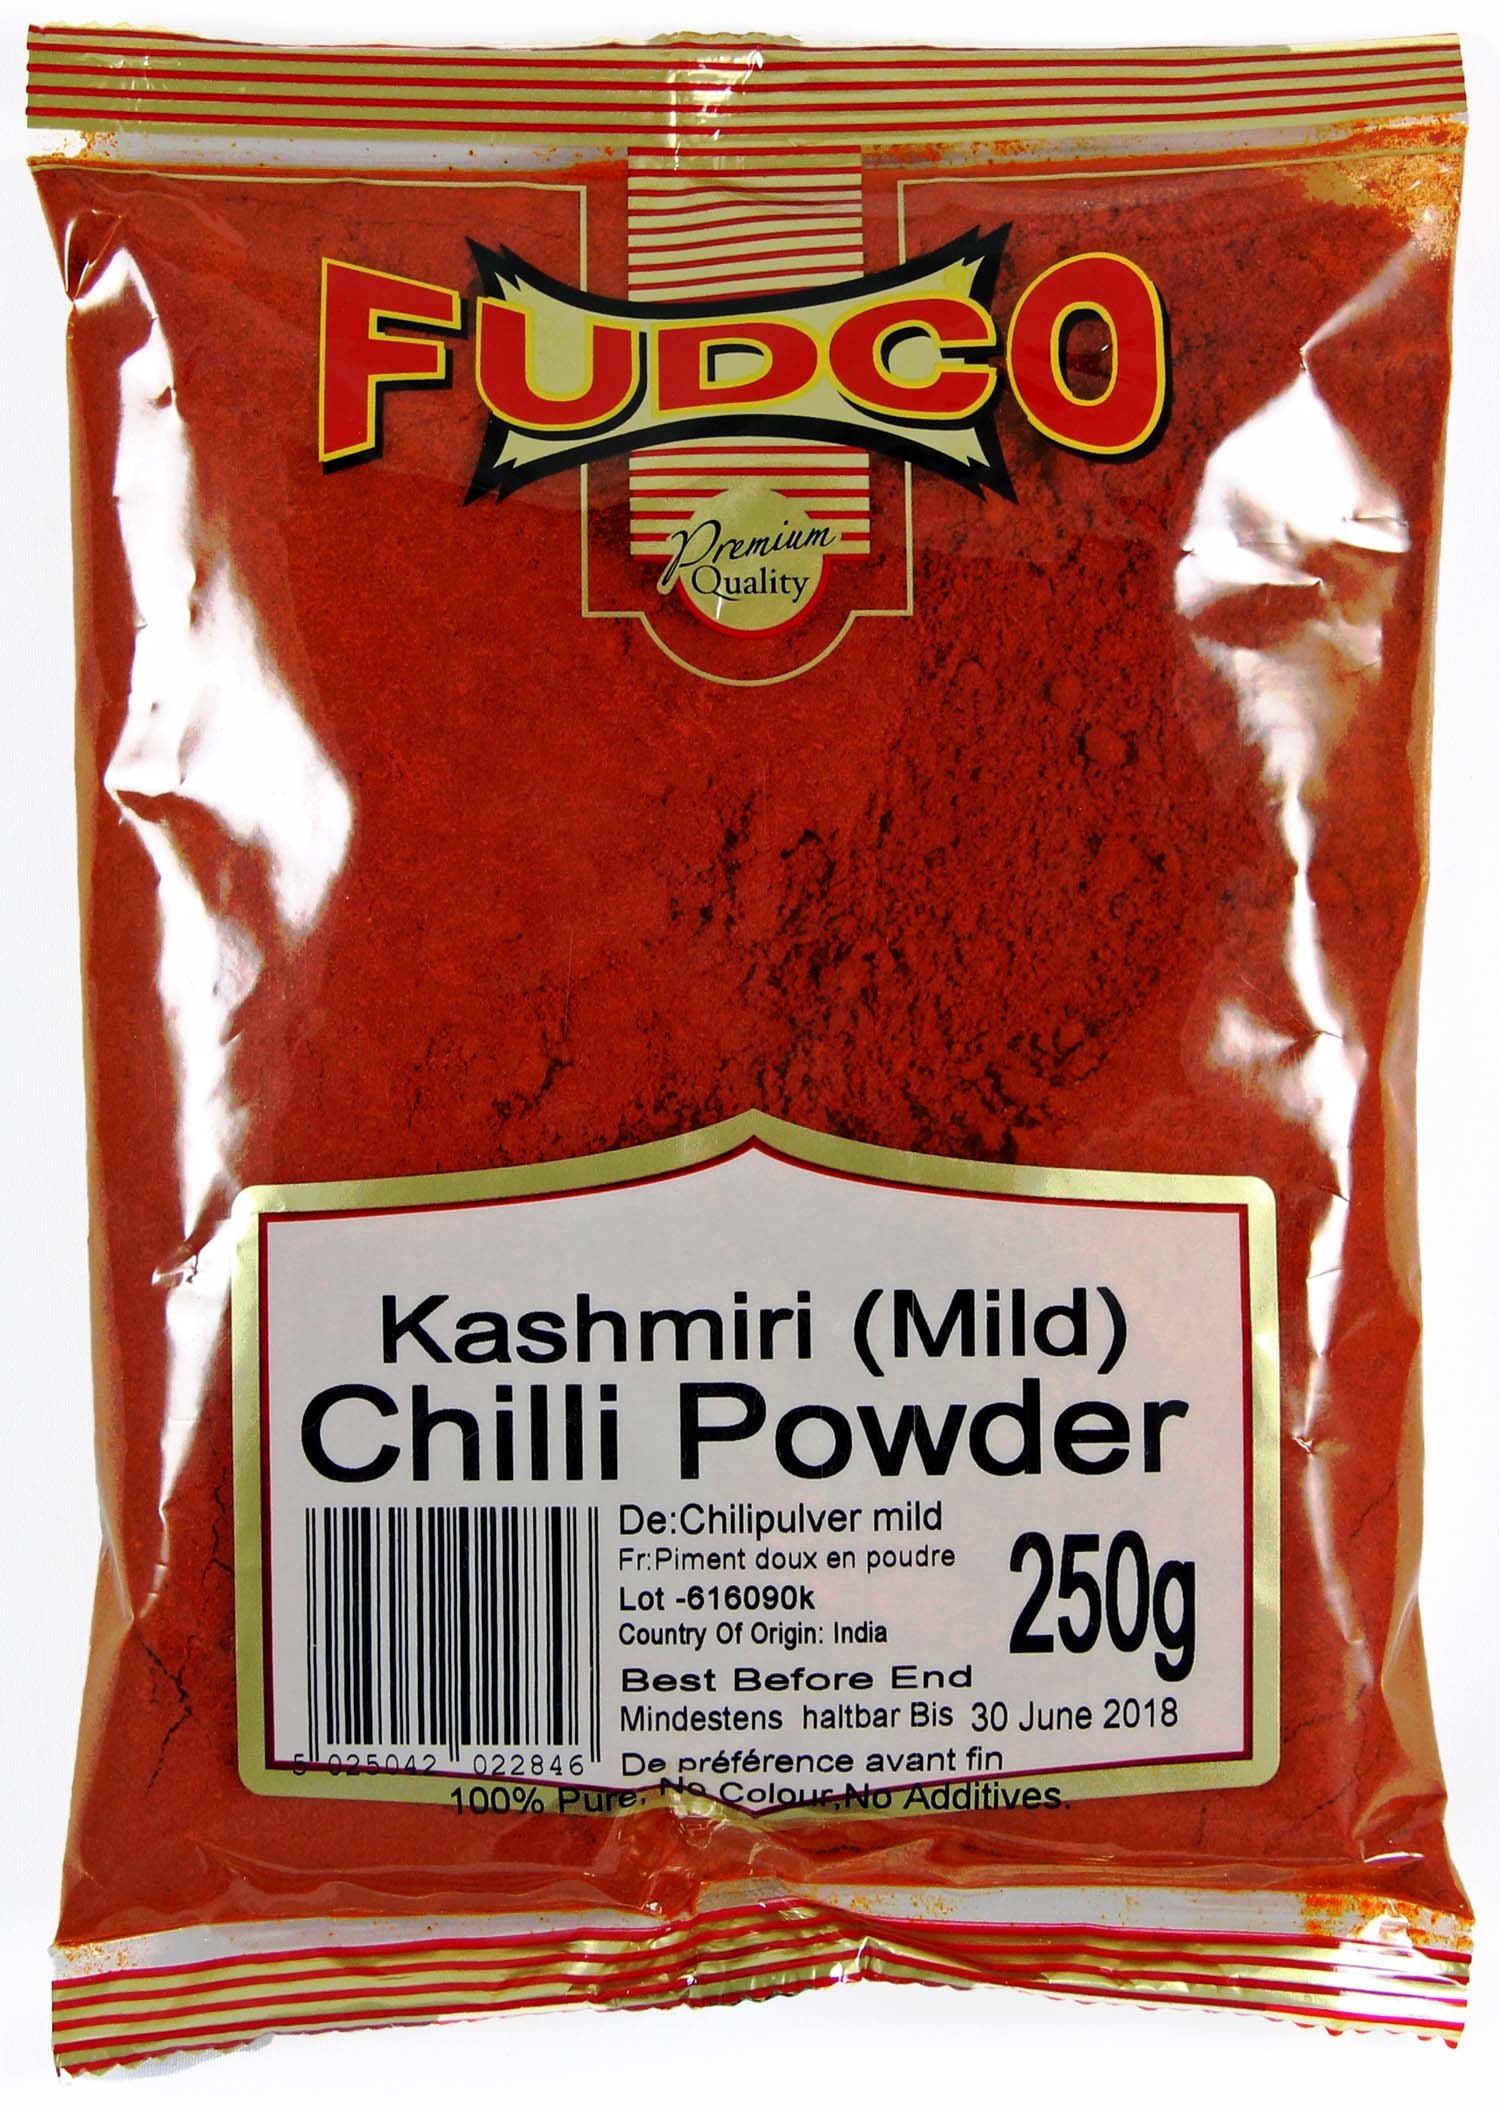 Fudco Chilli Powder (Kashmiri Mild) 250g